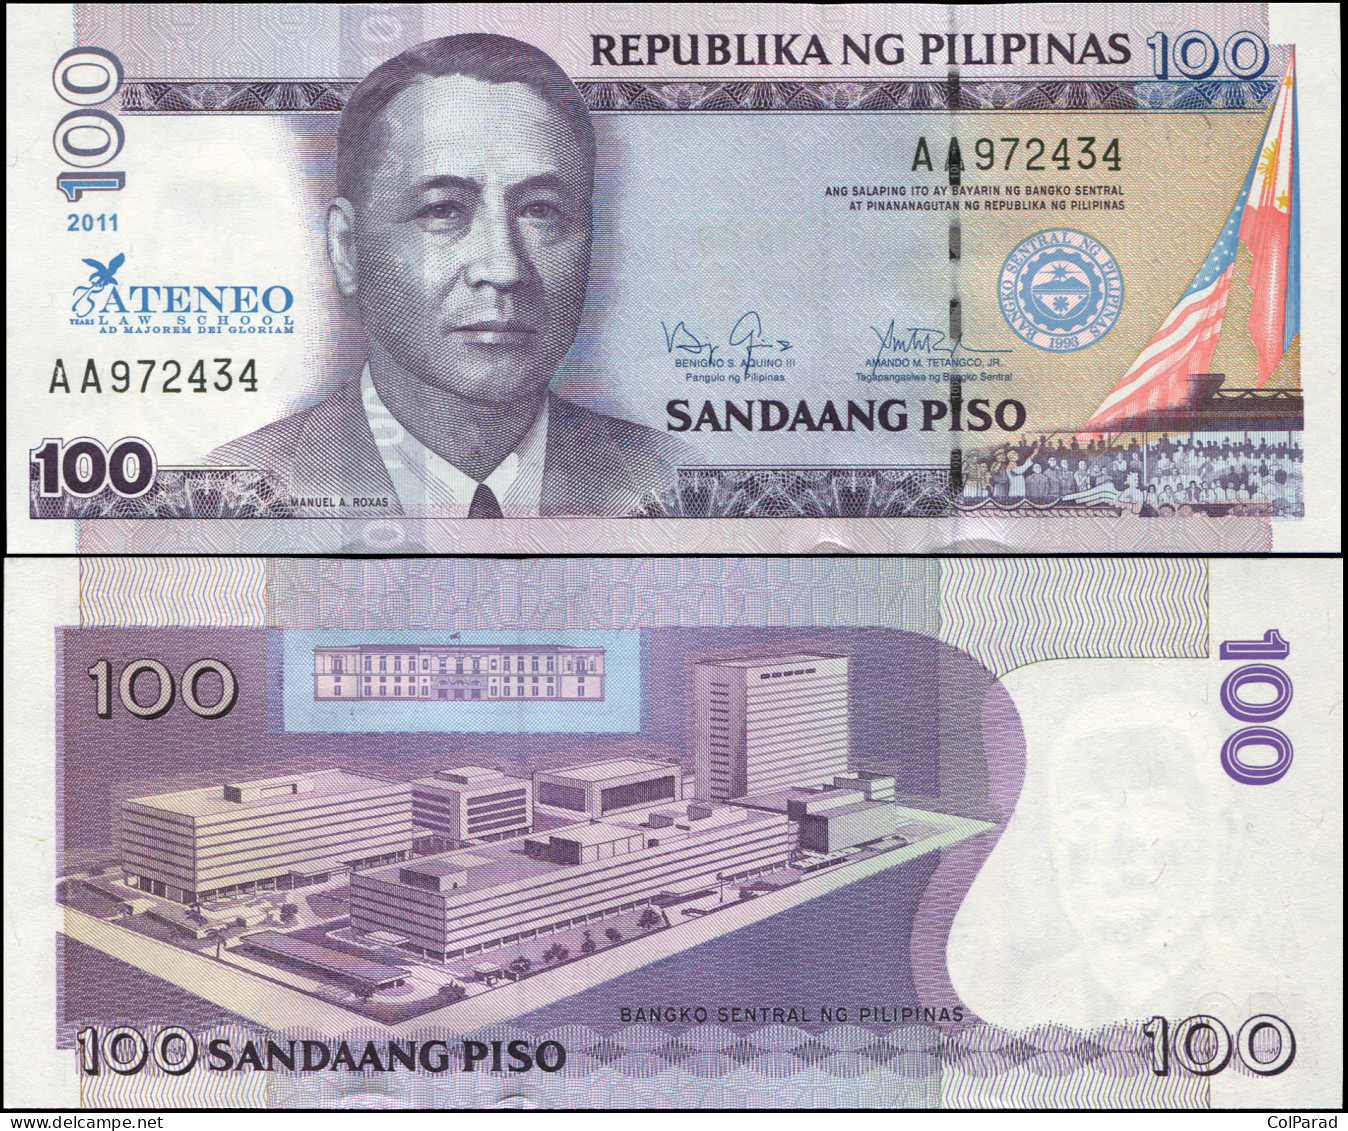 PHILIPPINES 100 PISO - 2011 - Paper Unc - P.212a Banknote - ATENEO Law School - Philippinen